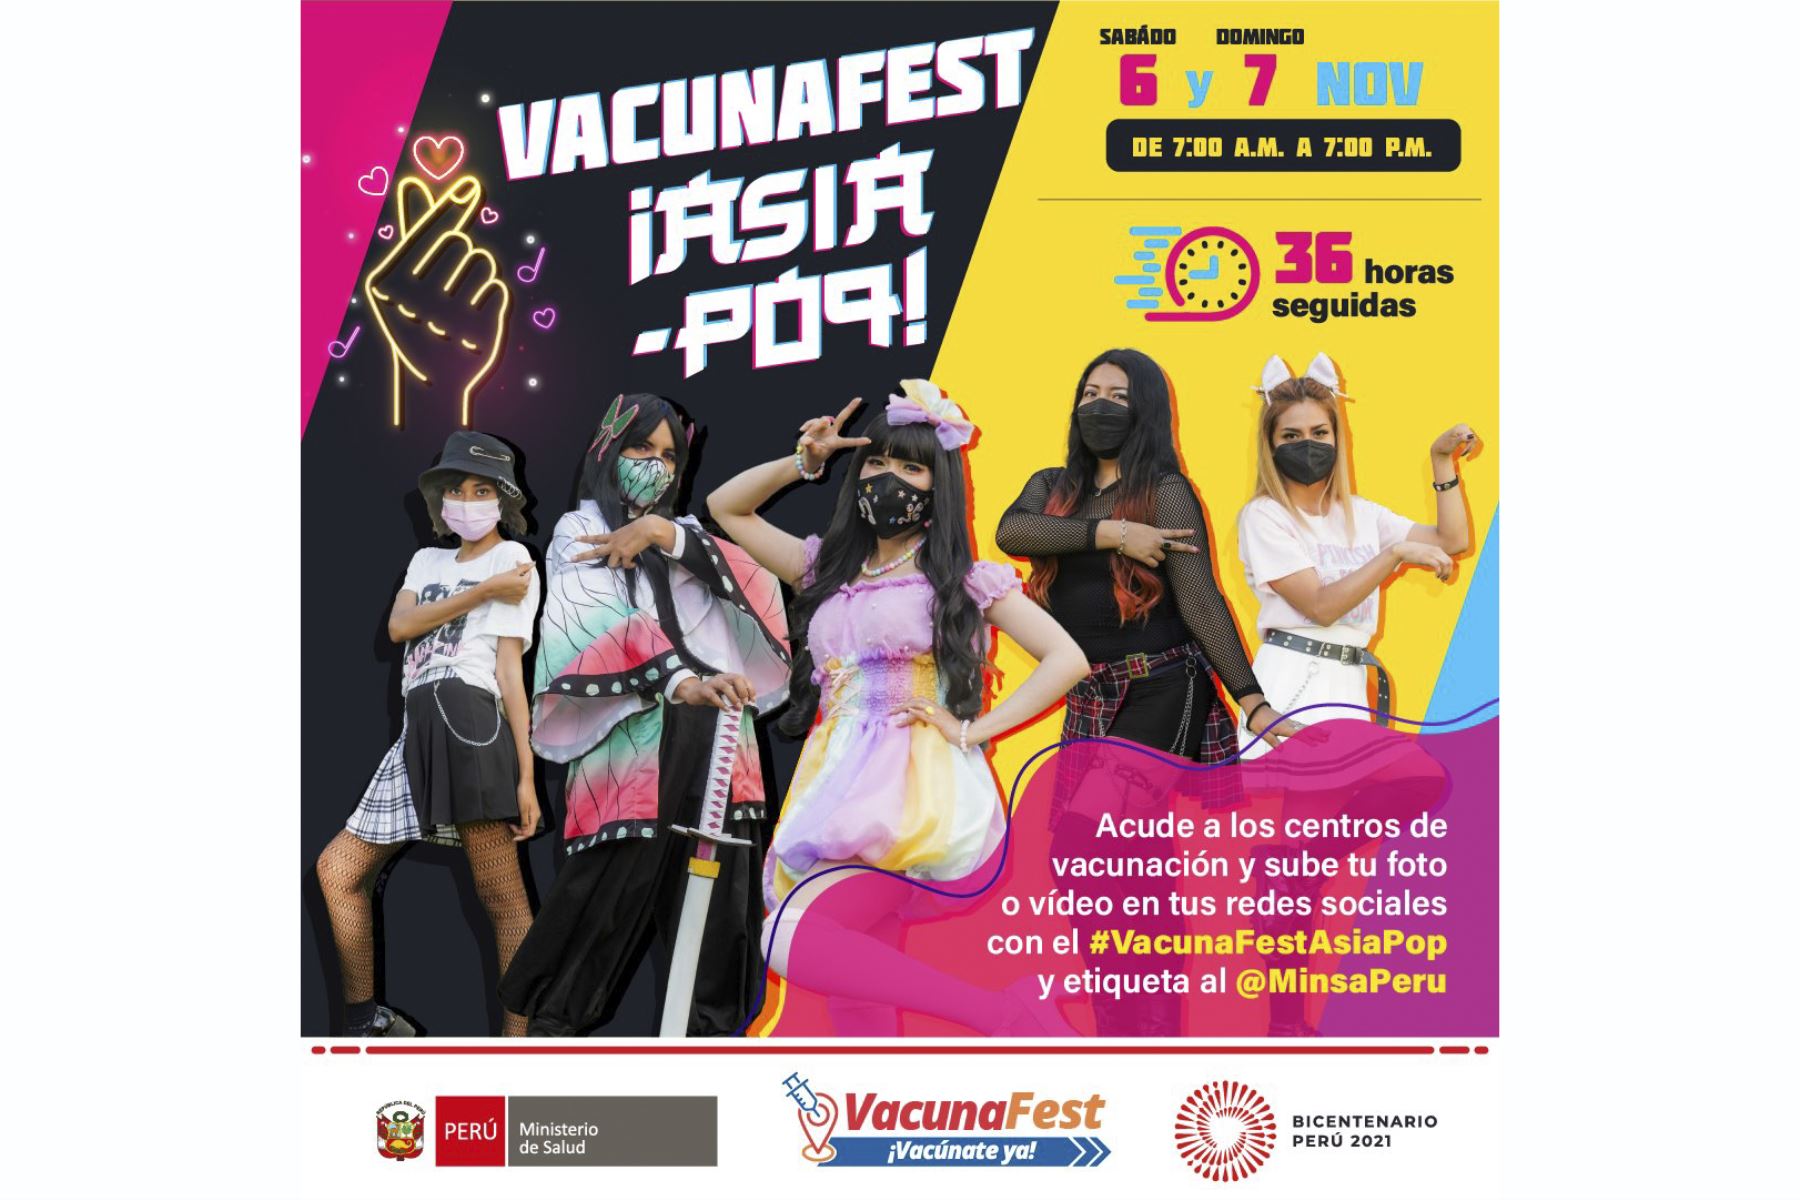 Covid-19: VacunaFest Asia Pop continuará hasta las 7 p.m. de hoy domingo